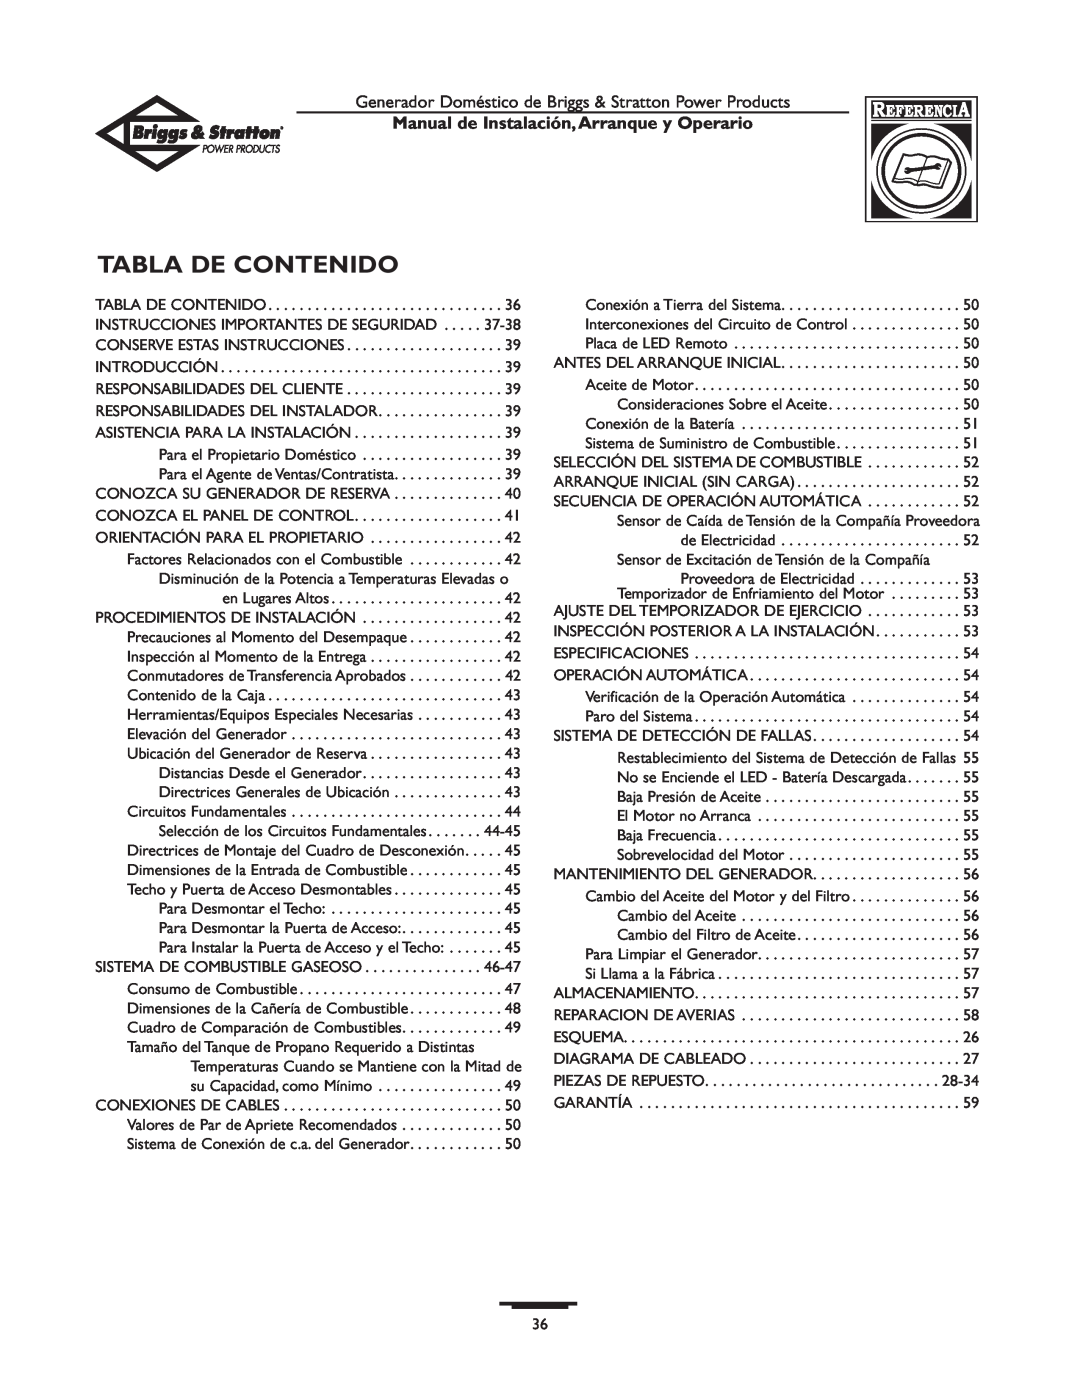 Briggs & Stratton 01897-0 manual Tabla De Contenido, Manual de Instalación,Arranque y Operario 